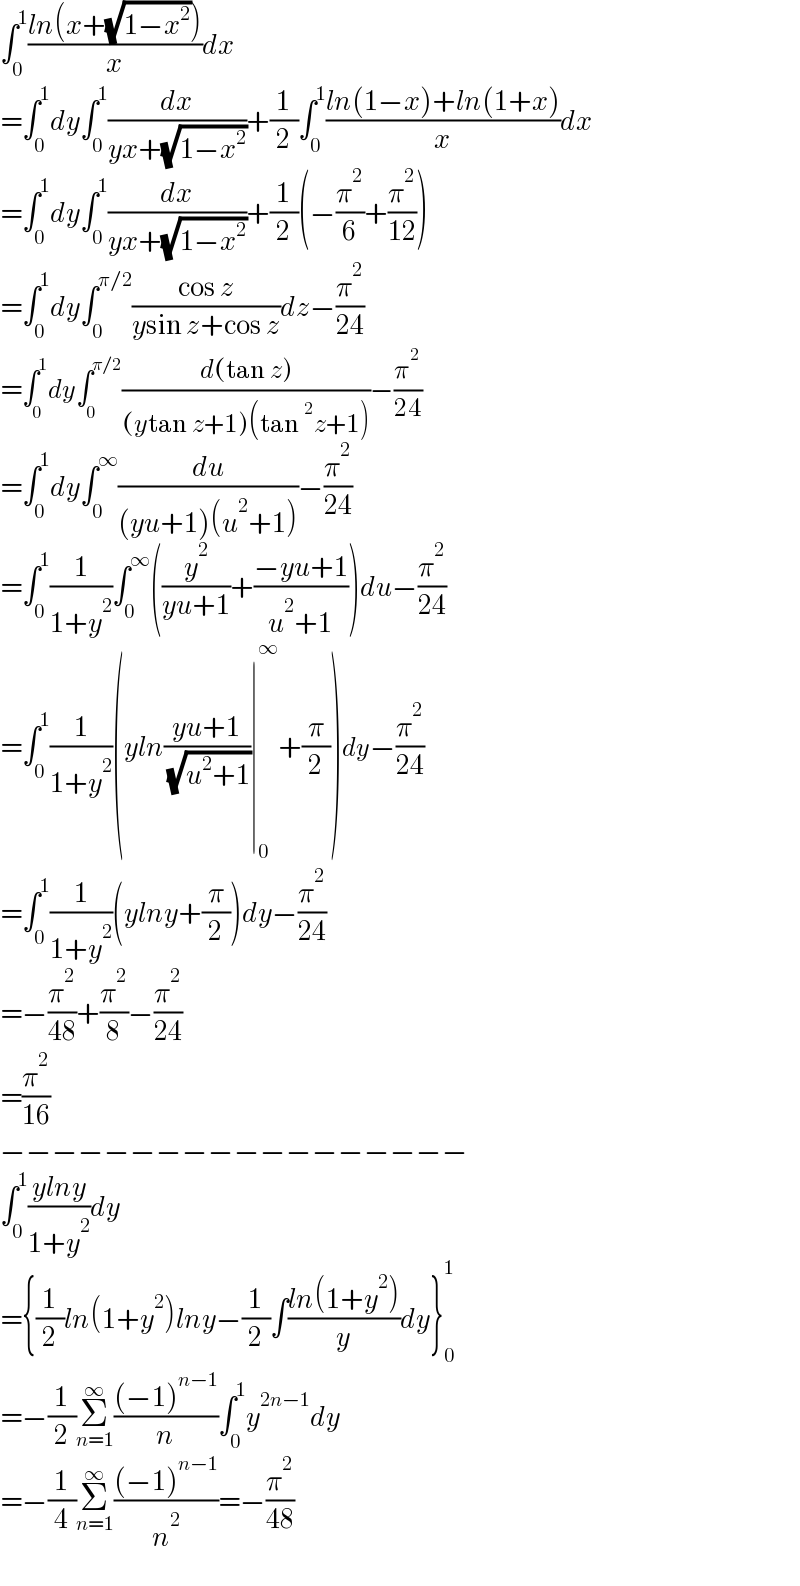 ∫_0 ^1 ((ln(x+(√(1−x^2 ))))/x)dx  =∫_0 ^1 dy∫_0 ^1 (dx/(yx+(√(1−x^2 ))))+(1/2)∫_0 ^1 ((ln(1−x)+ln(1+x))/x)dx  =∫_0 ^1 dy∫_0 ^1 (dx/(yx+(√(1−x^2 ))))+(1/2)(−(π^2 /6)+(π^2 /(12)))  =∫_0 ^1 dy∫_0 ^(π/2) ((cos z)/(ysin z+cos z))dz−(π^2 /(24))  =∫_0 ^1 dy∫_0 ^(π/2) ((d(tan z))/((ytan z+1)(tan^2 z+1)))−(π^2 /(24))  =∫_0 ^1 dy∫_0 ^∞ (du/((yu+1)(u^2 +1)))−(π^2 /(24))  =∫_0 ^1 (1/(1+y^2 ))∫_0 ^∞ ((y^2 /(yu+1))+((−yu+1)/(u^2 +1)))du−(π^2 /(24))  =∫_0 ^1 (1/(1+y^2 ))(yln((yu+1)/( (√(u^2 +1))))∣_0 ^∞ +(π/2))dy−(π^2 /(24))  =∫_0 ^1 (1/(1+y^2 ))(ylny+(π/2))dy−(π^2 /(24))  =−(π^2 /(48))+(π^2 /8)−(π^2 /(24))  =(π^2 /(16))  −−−−−−−−−−−−−−−−−−  ∫_0 ^1 ((ylny)/(1+y^2 ))dy  ={(1/2)ln(1+y^2 )lny−(1/2)∫((ln(1+y^2 ))/y)dy}_0 ^1   =−(1/2)Σ_(n=1) ^∞ (((−1)^(n−1) )/n)∫_0 ^1 y^(2n−1) dy  =−(1/4)Σ_(n=1) ^∞ (((−1)^(n−1) )/n^2 )=−(π^2 /(48))  